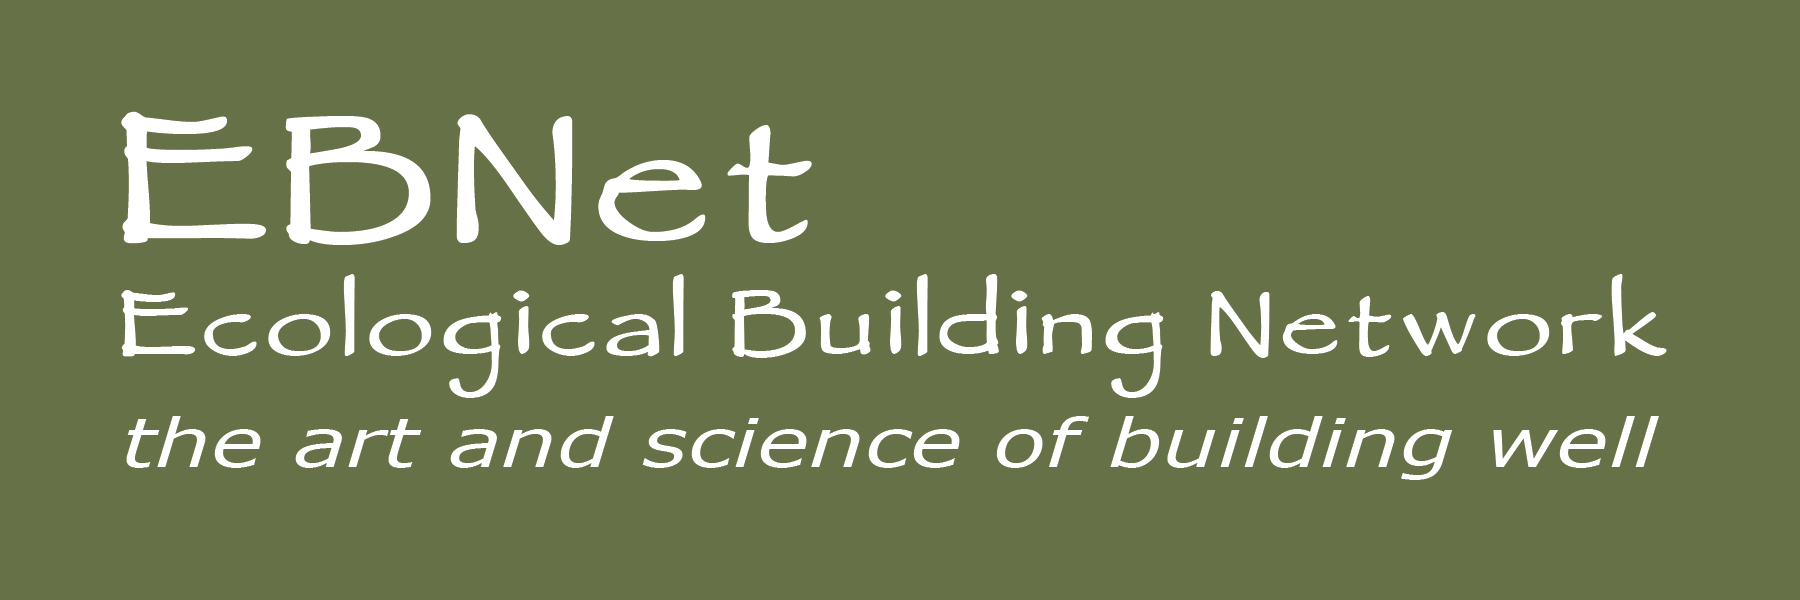 EBNet logo reverse w